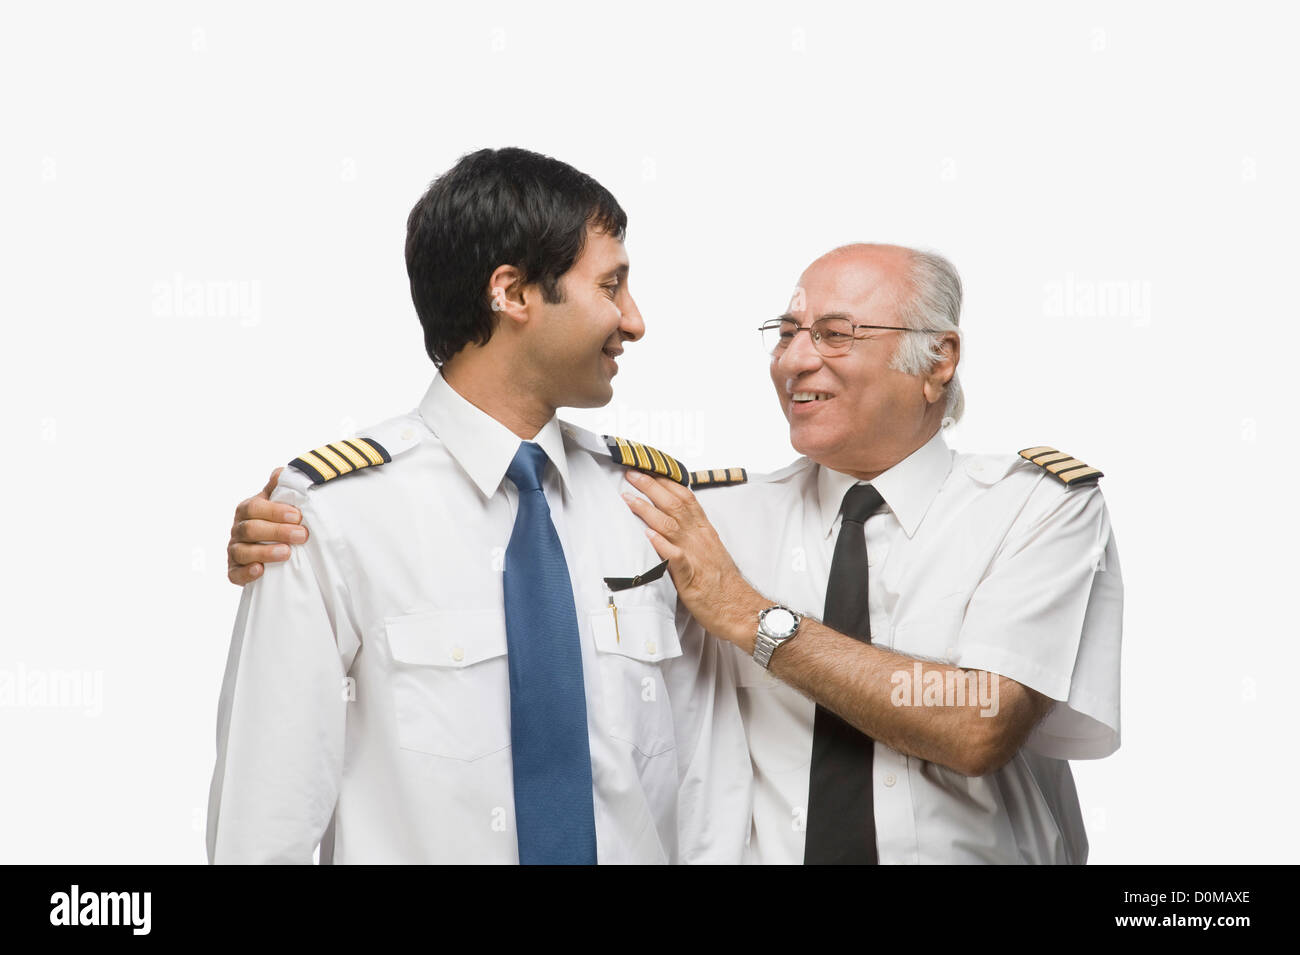 Cerca de los dos pilotos juntos y sonrientes Foto de stock